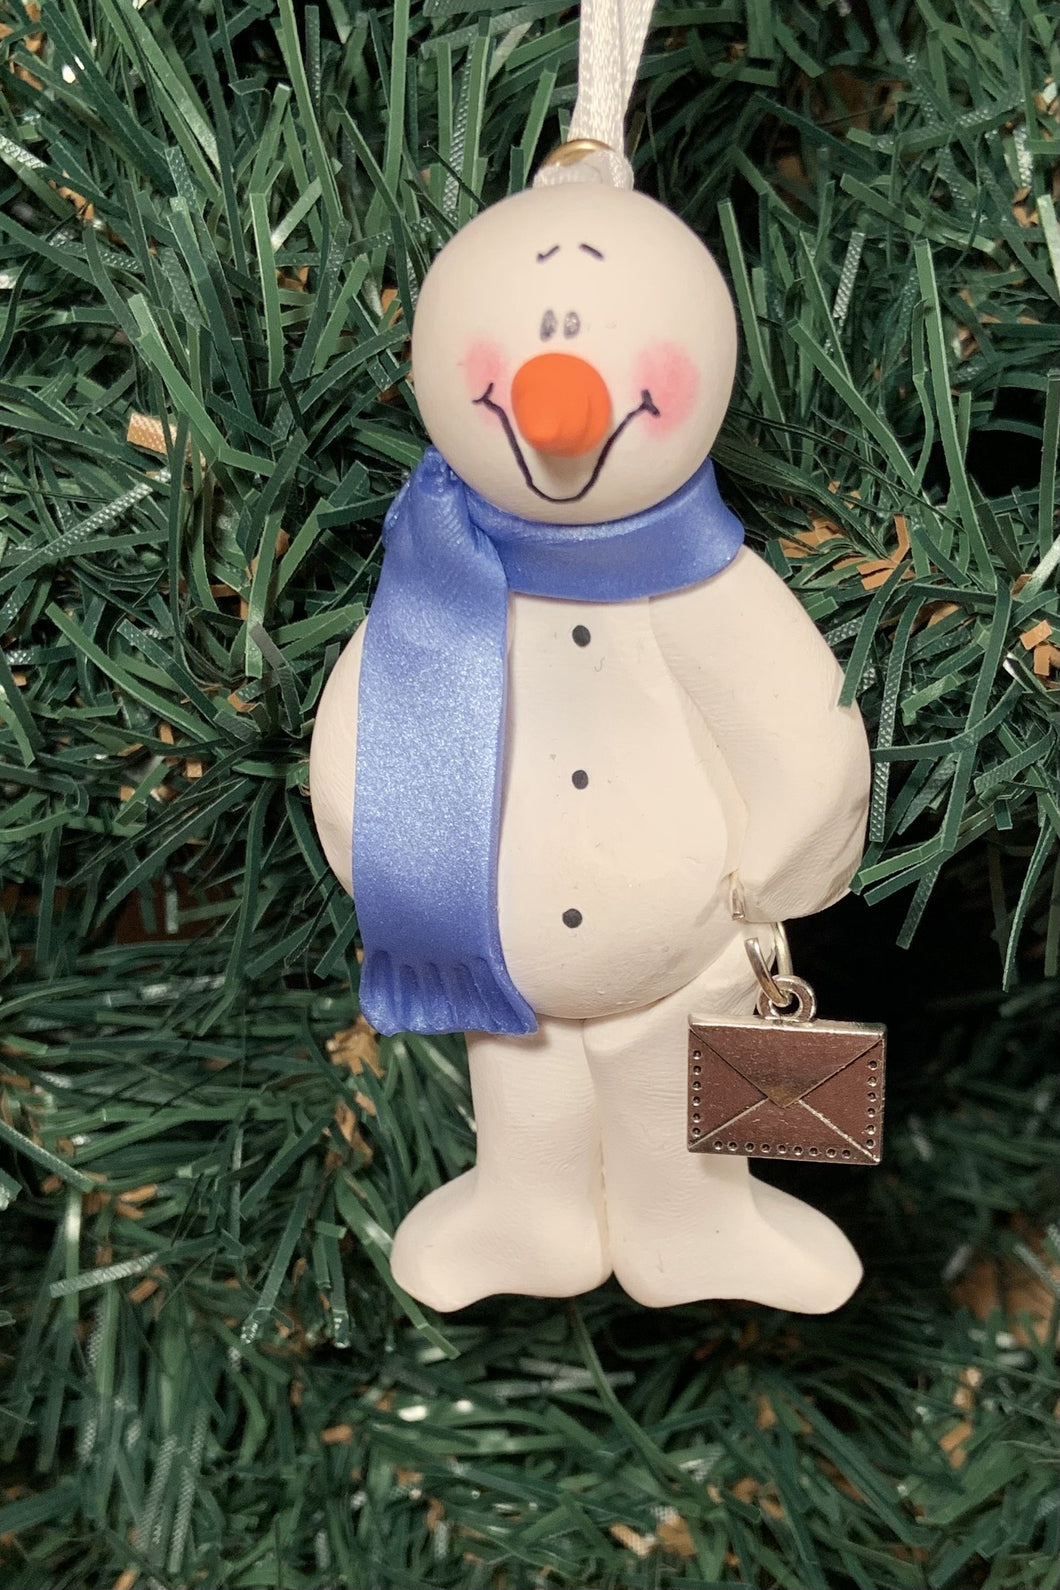 Postal Worker Snowman Tree Ornament